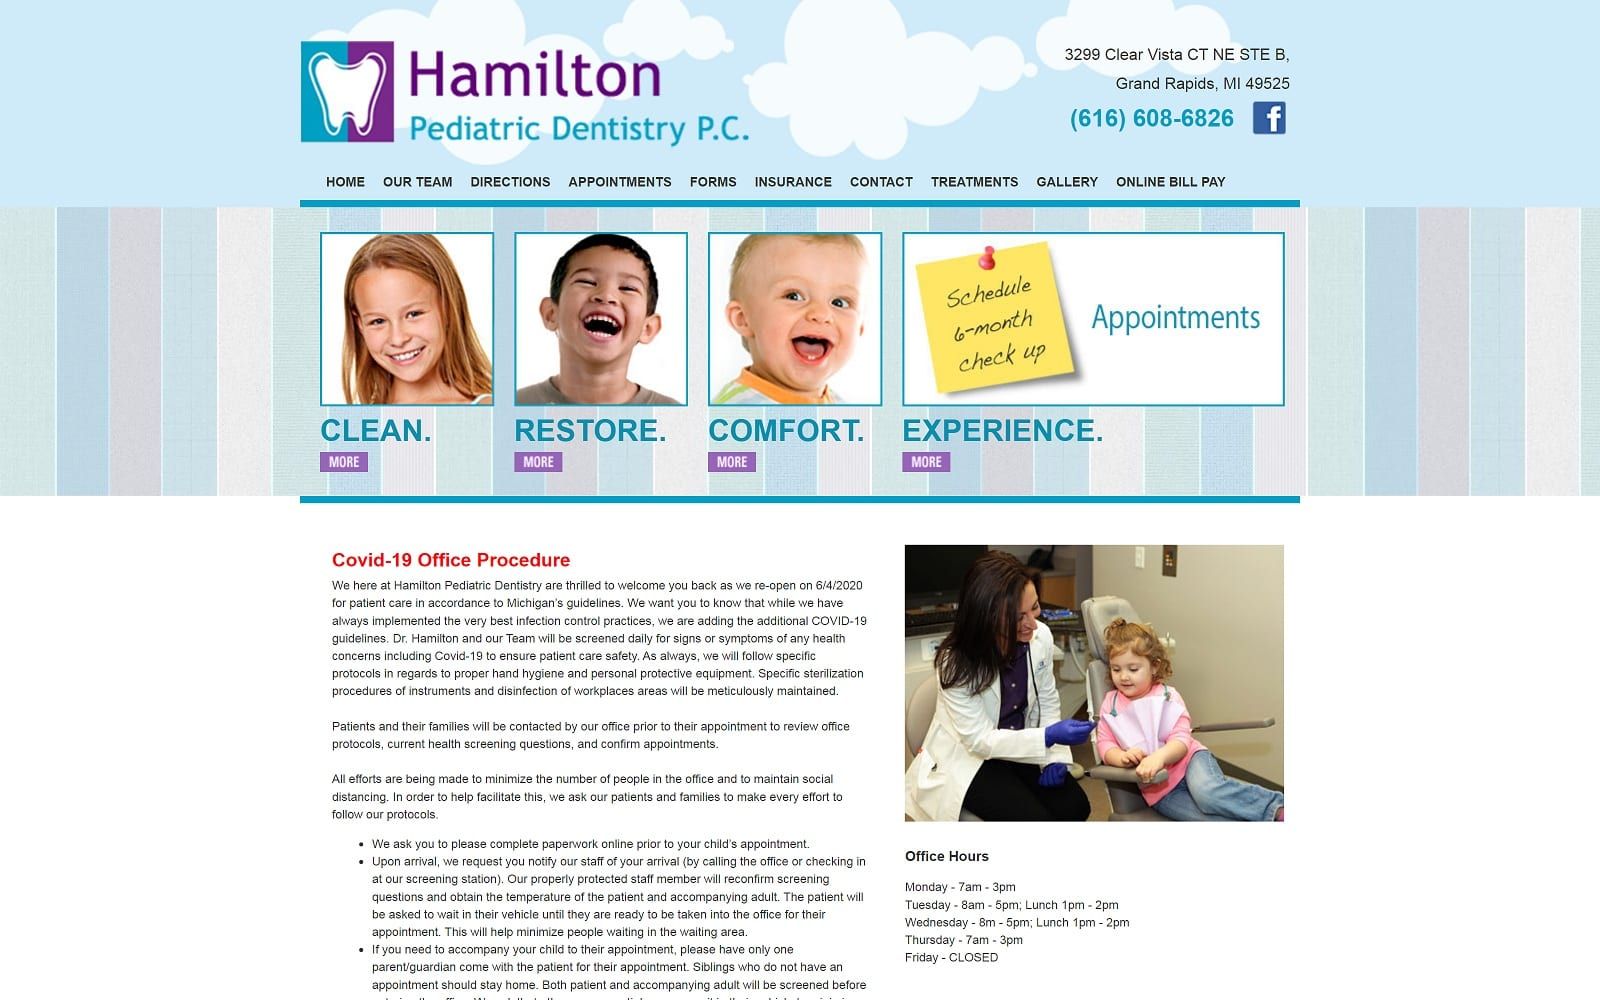 The screenshot of hamilton pediatric dentistry pc veronicahamiltondds. Com dr. Veronica hamilton website